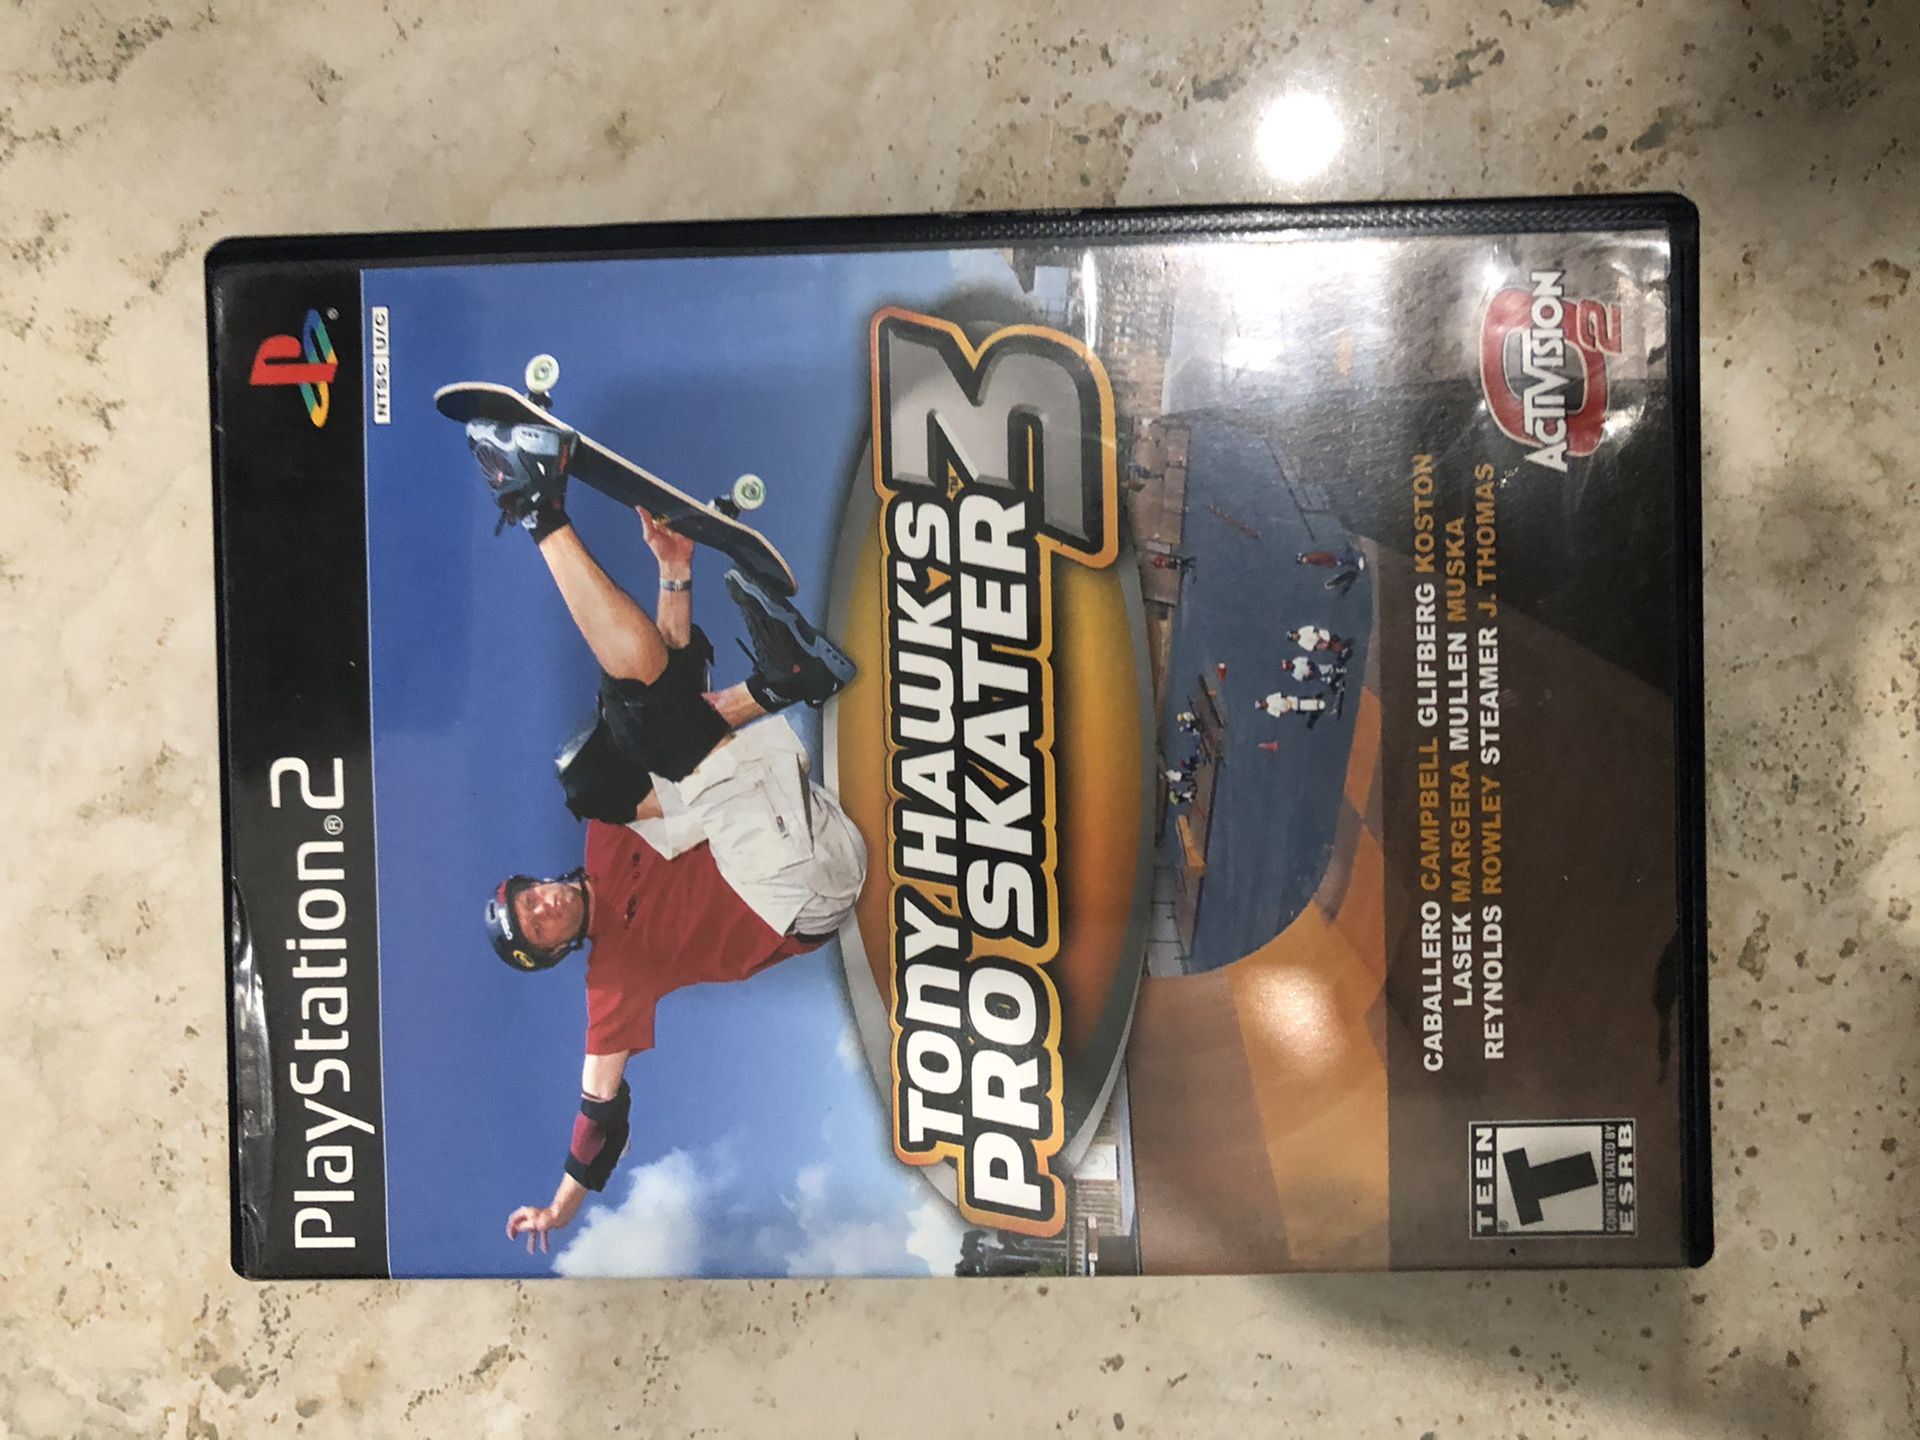 Tony Hawk’s Pro Skater 3 Playstation 2